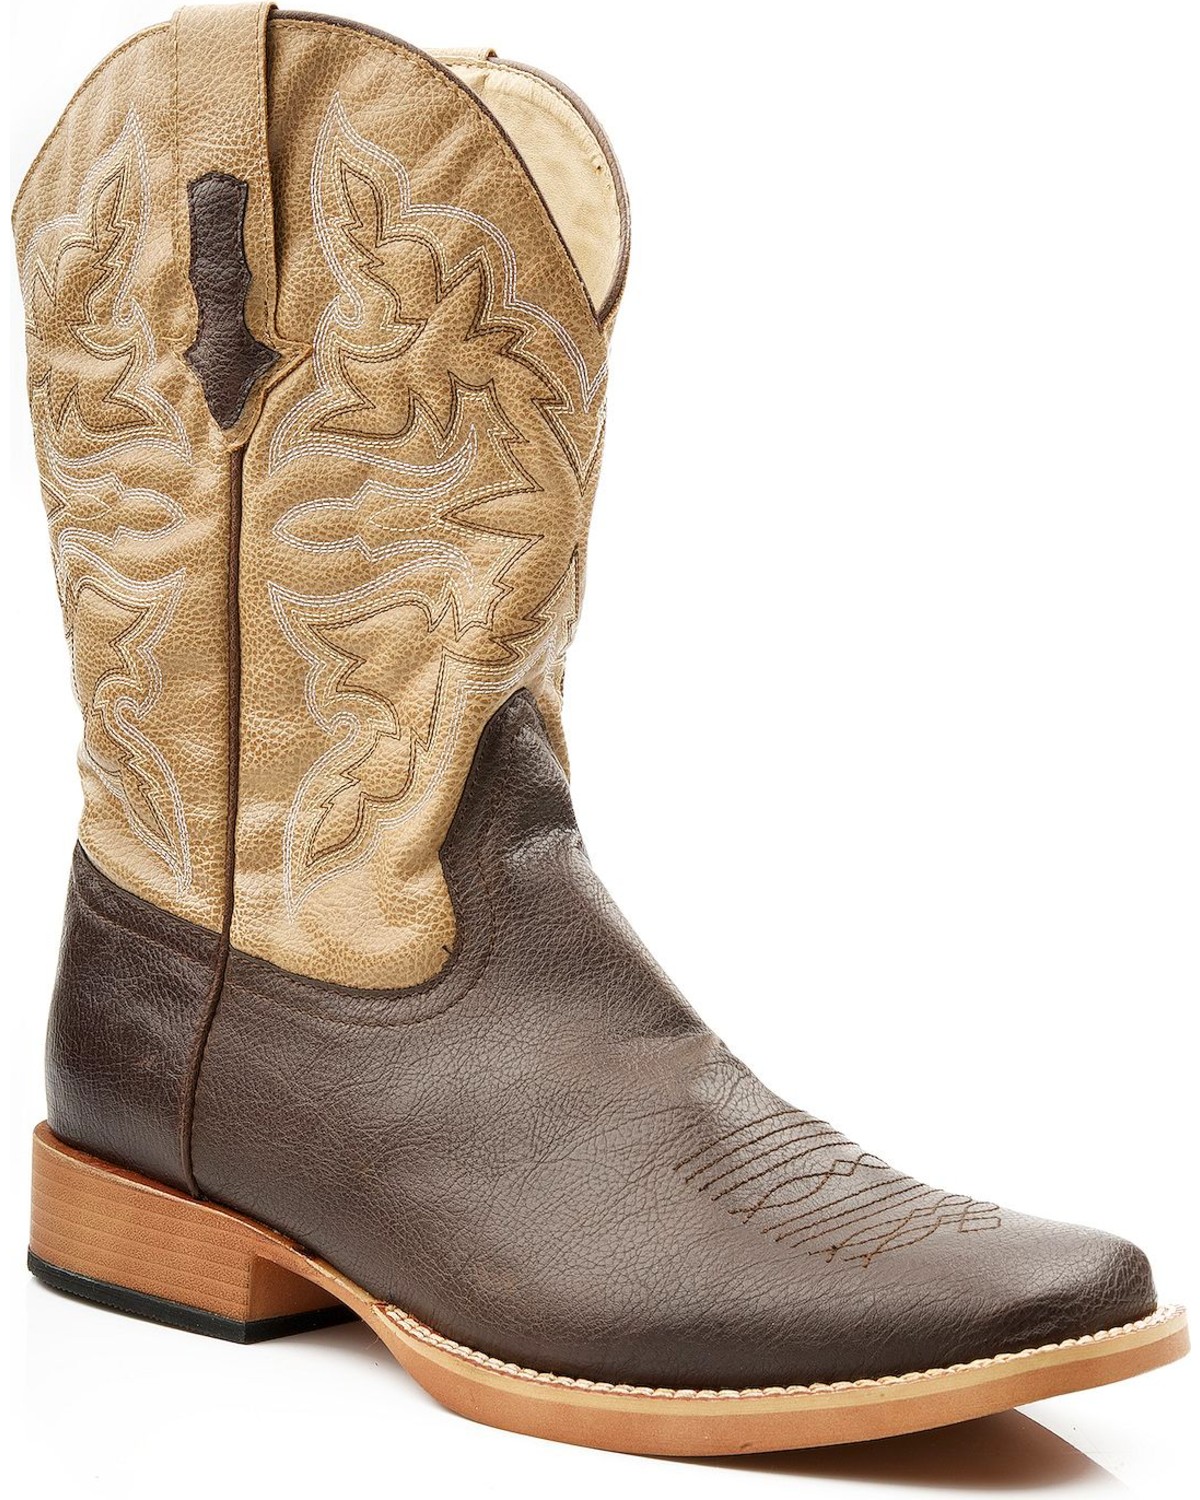 Roper Men's Western Boots